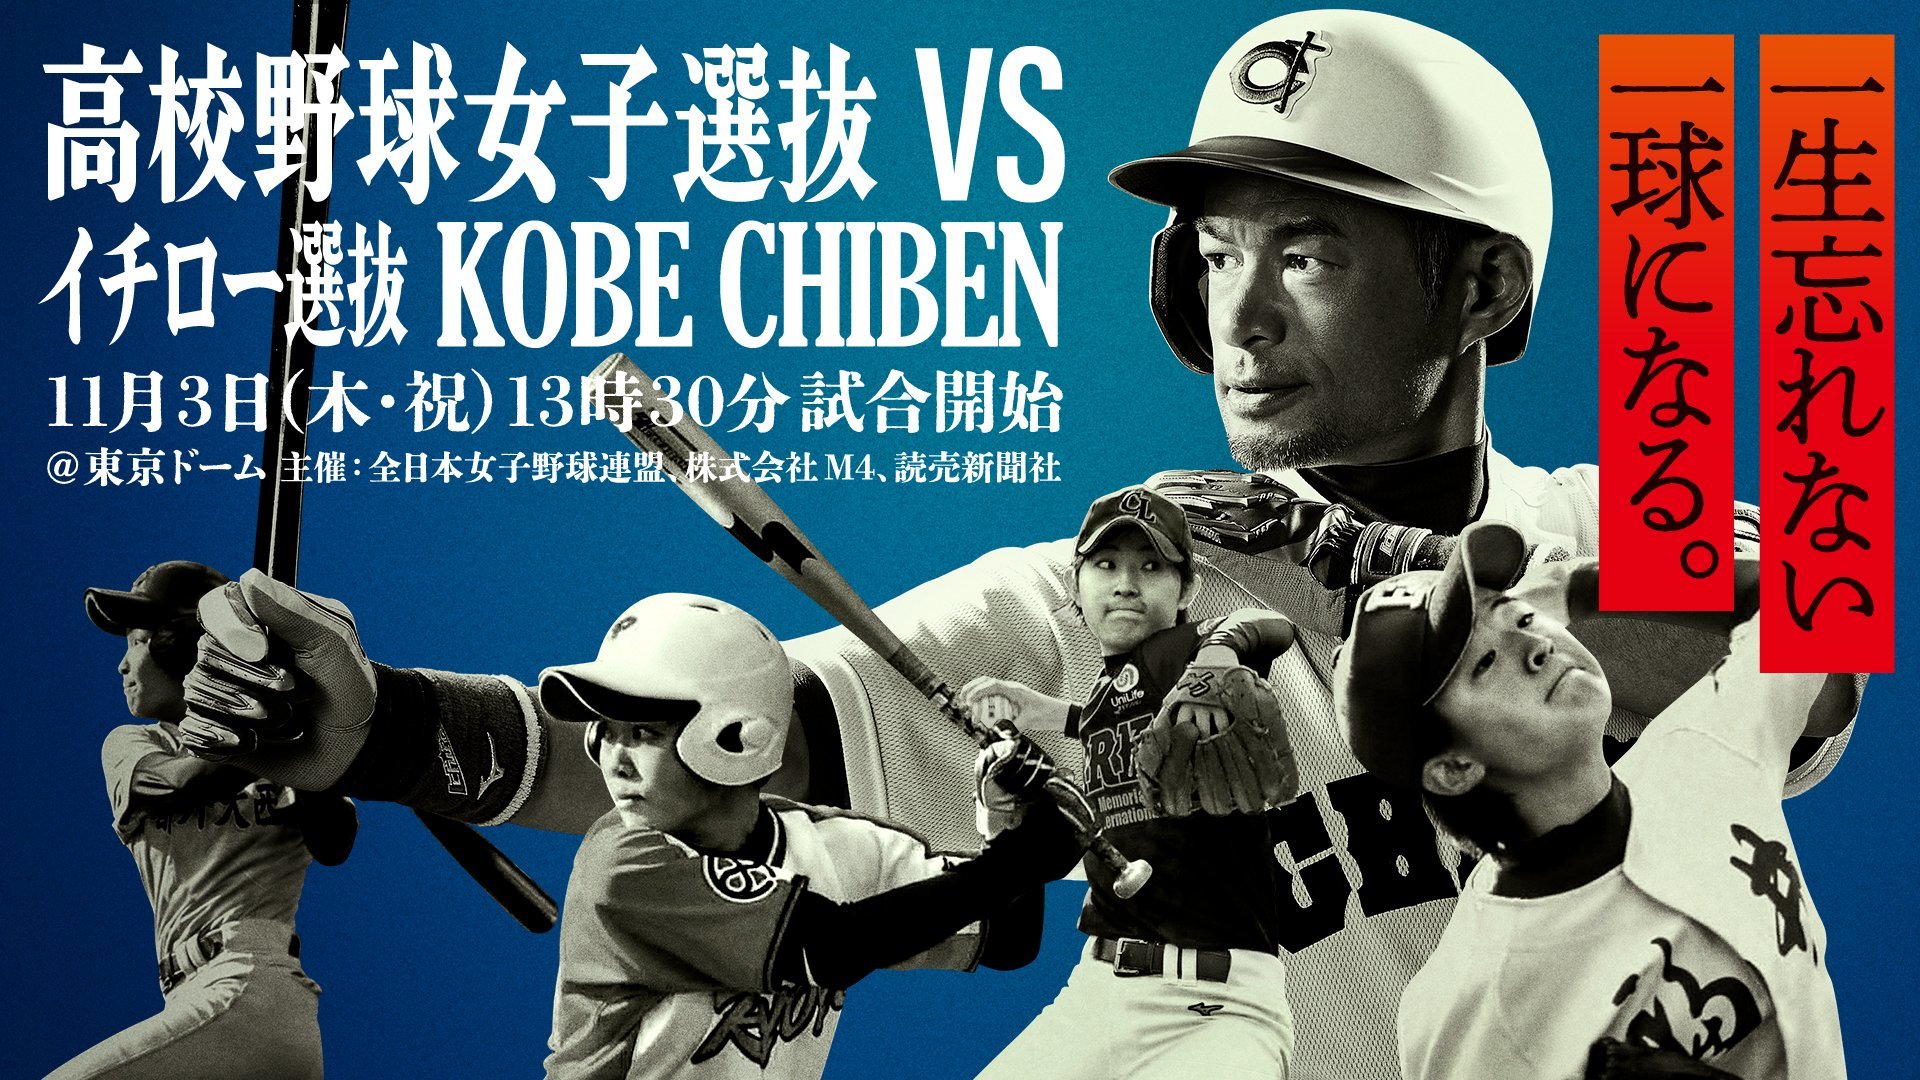 『高校野球女子選抜vsイチロー選抜 KOBE CHIBEN』は11月3日開催